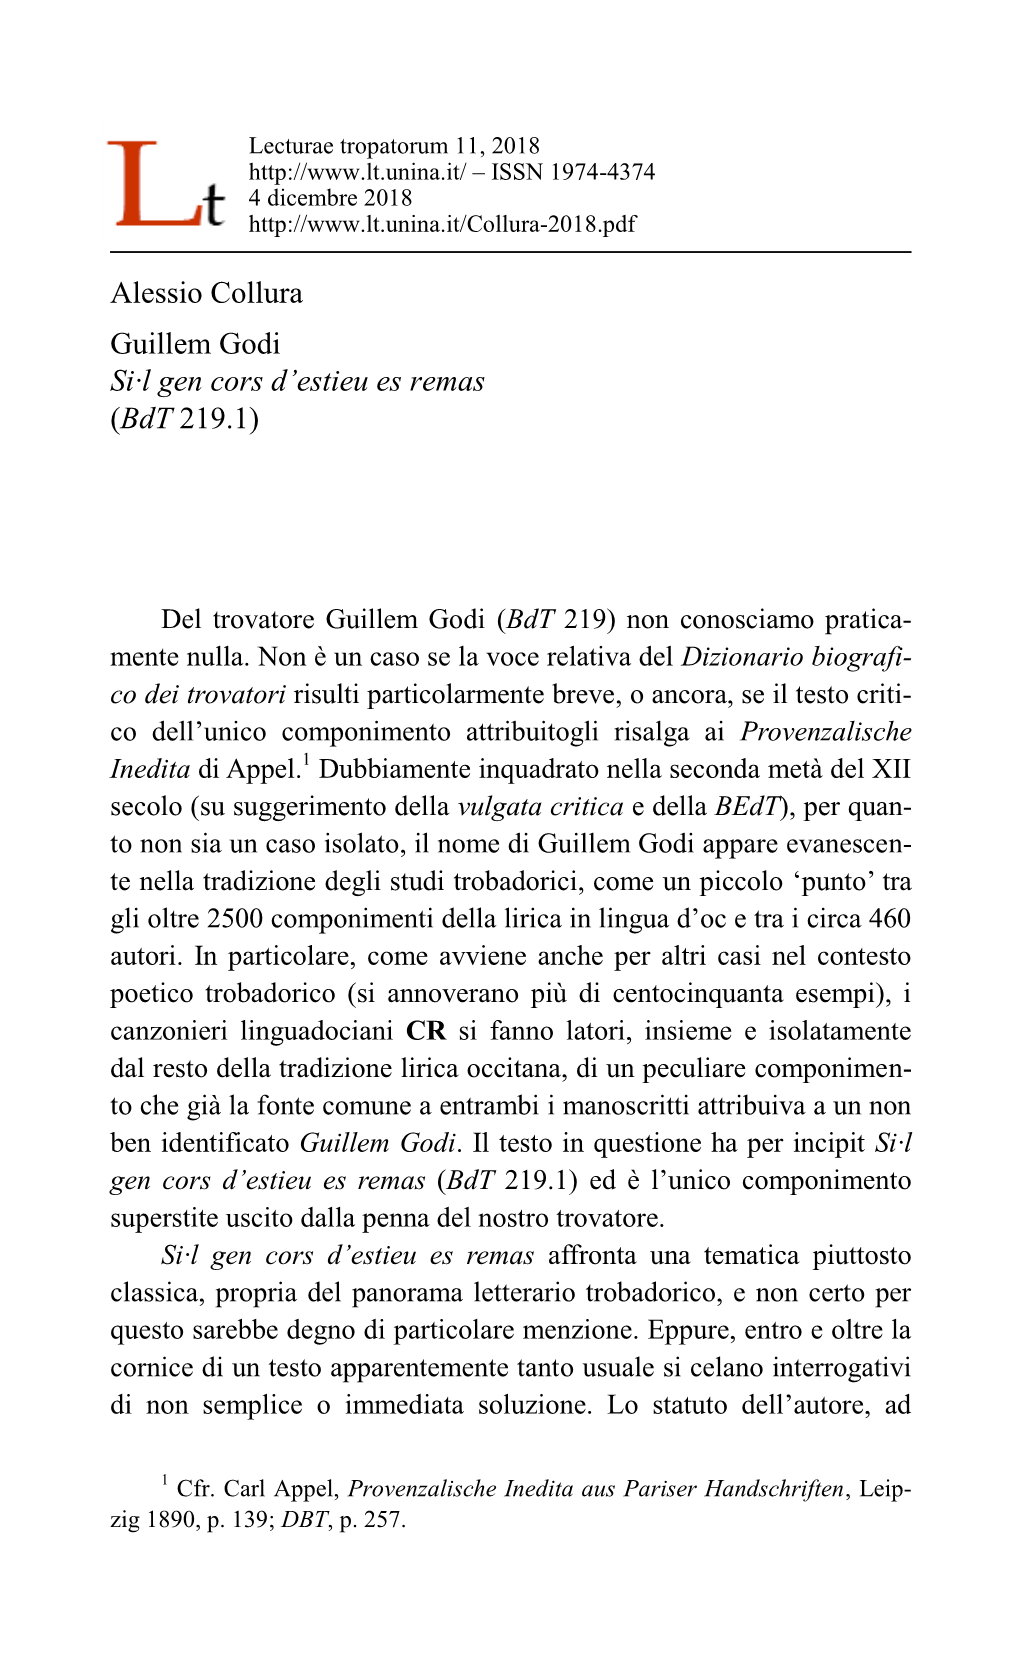 Alessio Collura Guillem Godi Si·L Gen Cors D'estieu Es Remas (Bdt 219.1)